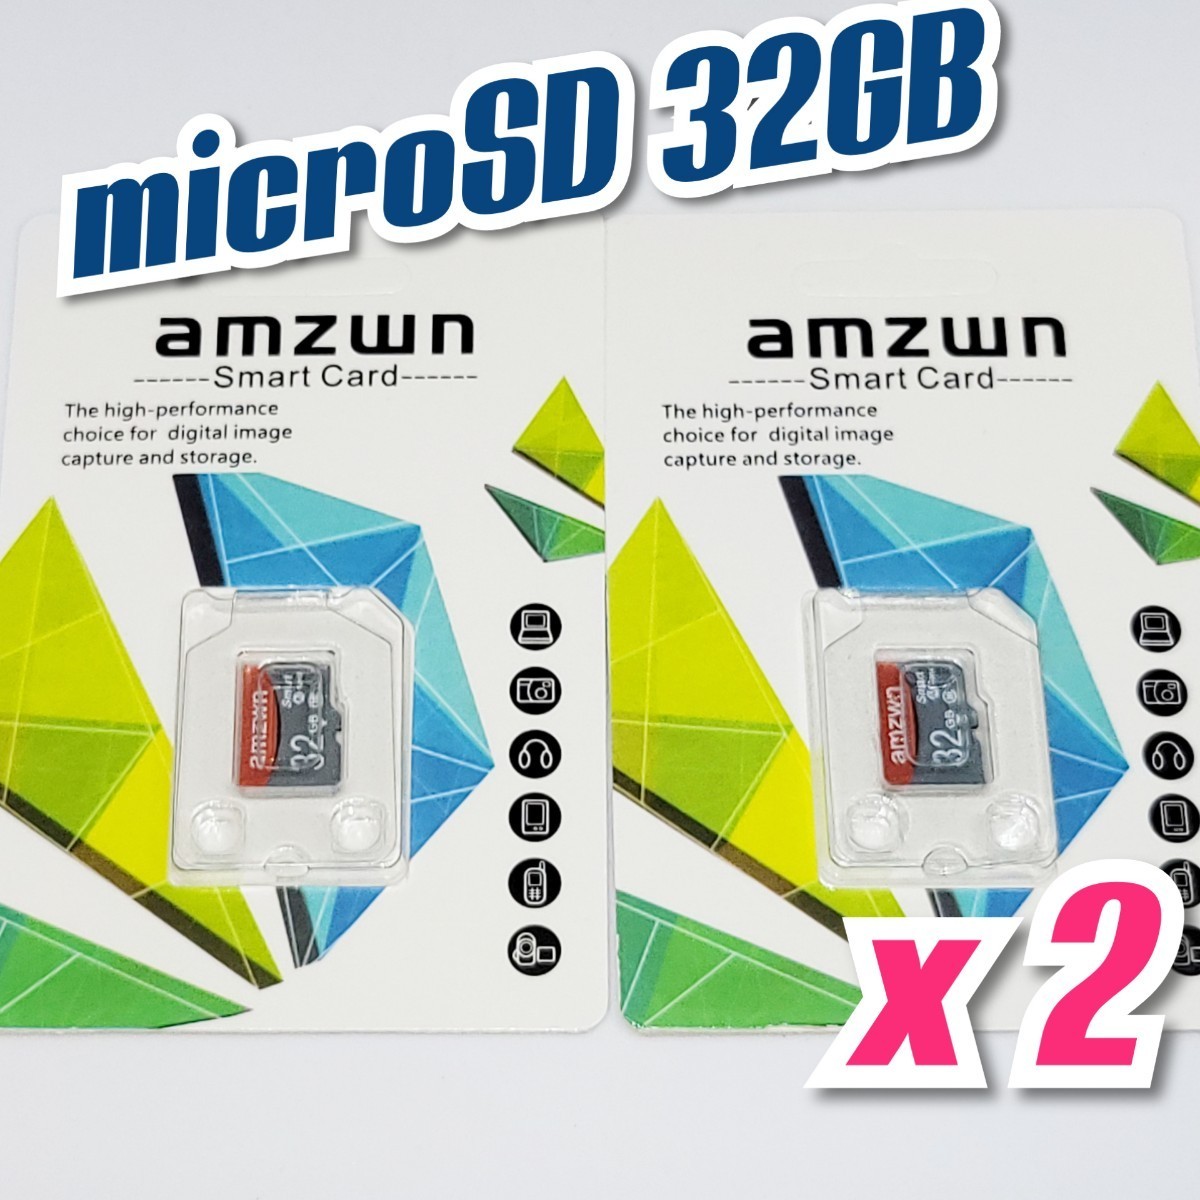 【送料無料】2枚セット マイクロSDカード 32GB 2枚 class10 2個 高速 microSD microSDHC マイクロSD AMZWN RED-GRAY _画像2